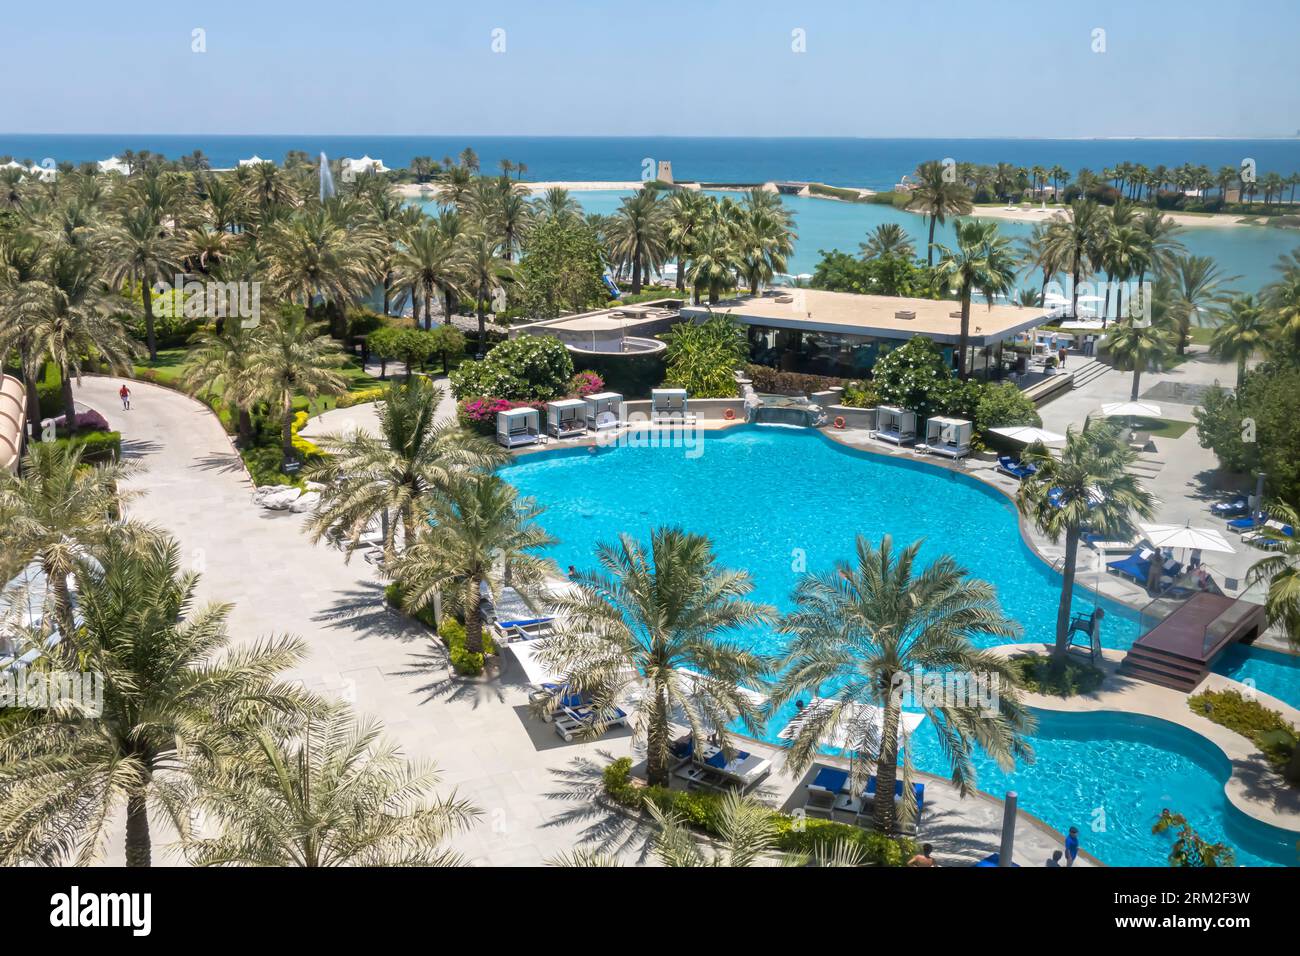 Les piscines du Ritz-Carlton Bahrain avec vue sur le golfe Persique Banque D'Images